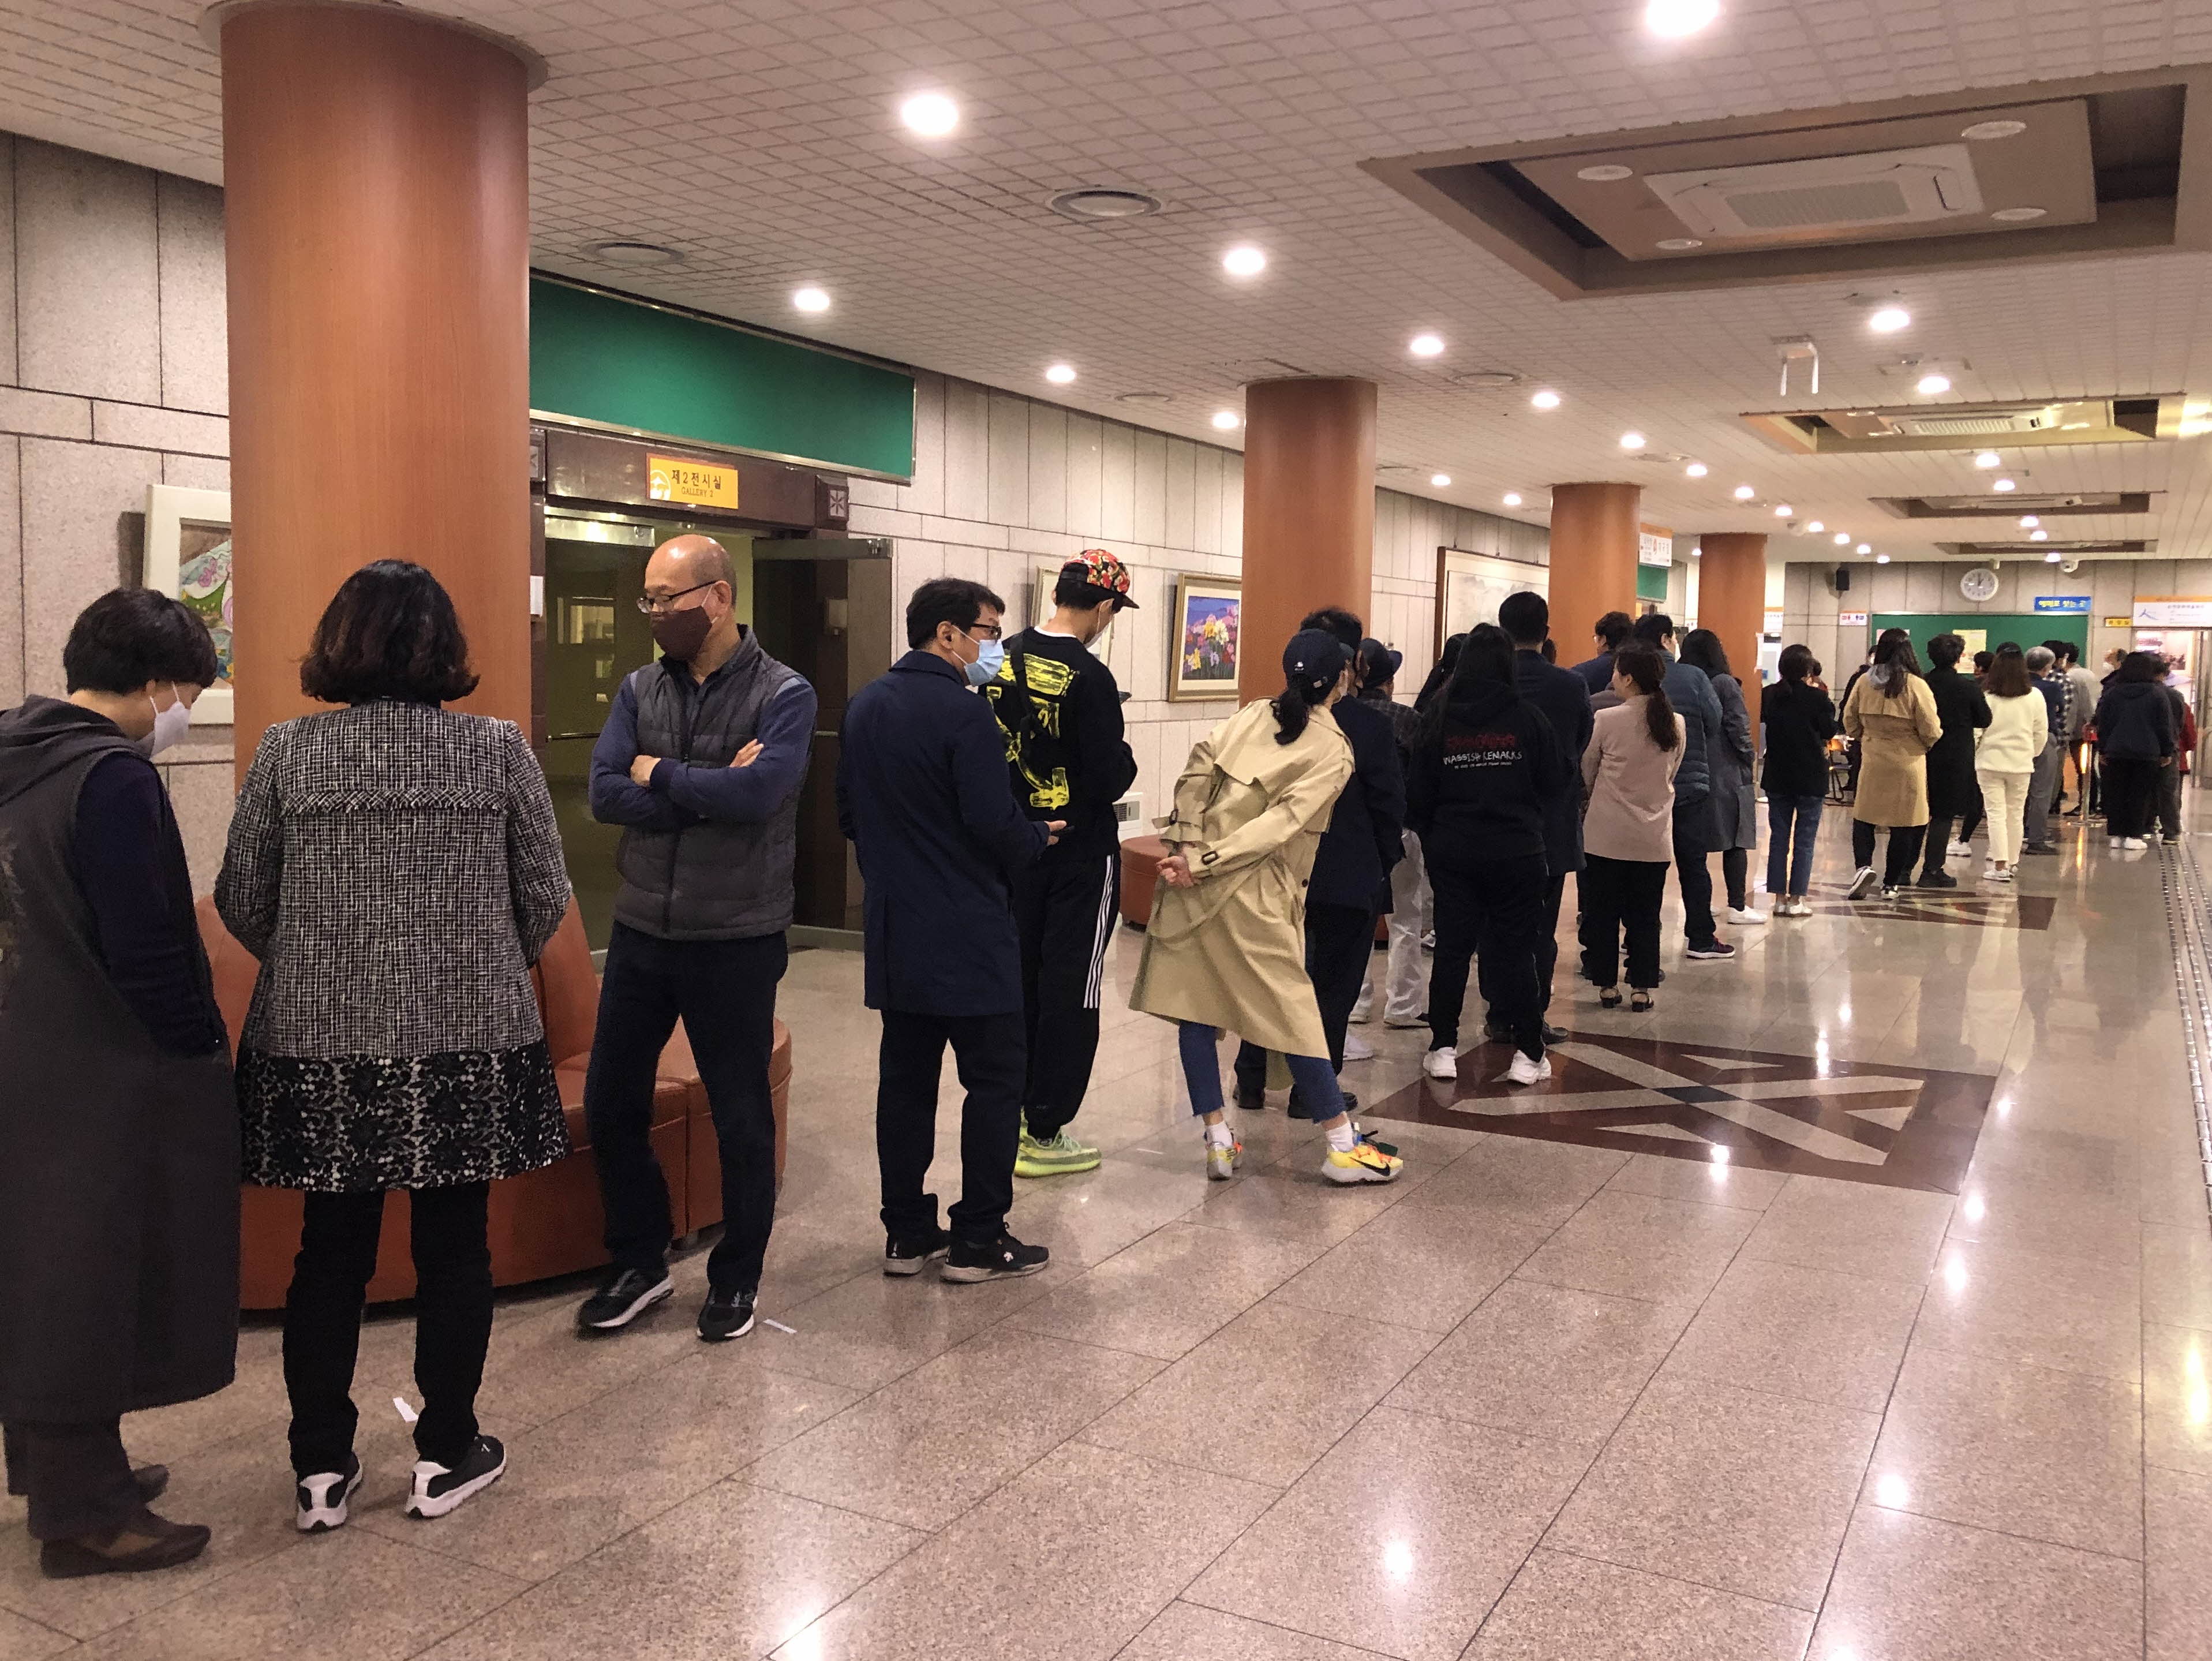 제21대 국회의원선거 사전투표를 하기 위해 많은 시민들이 줄을 서서 기다리고 있다.